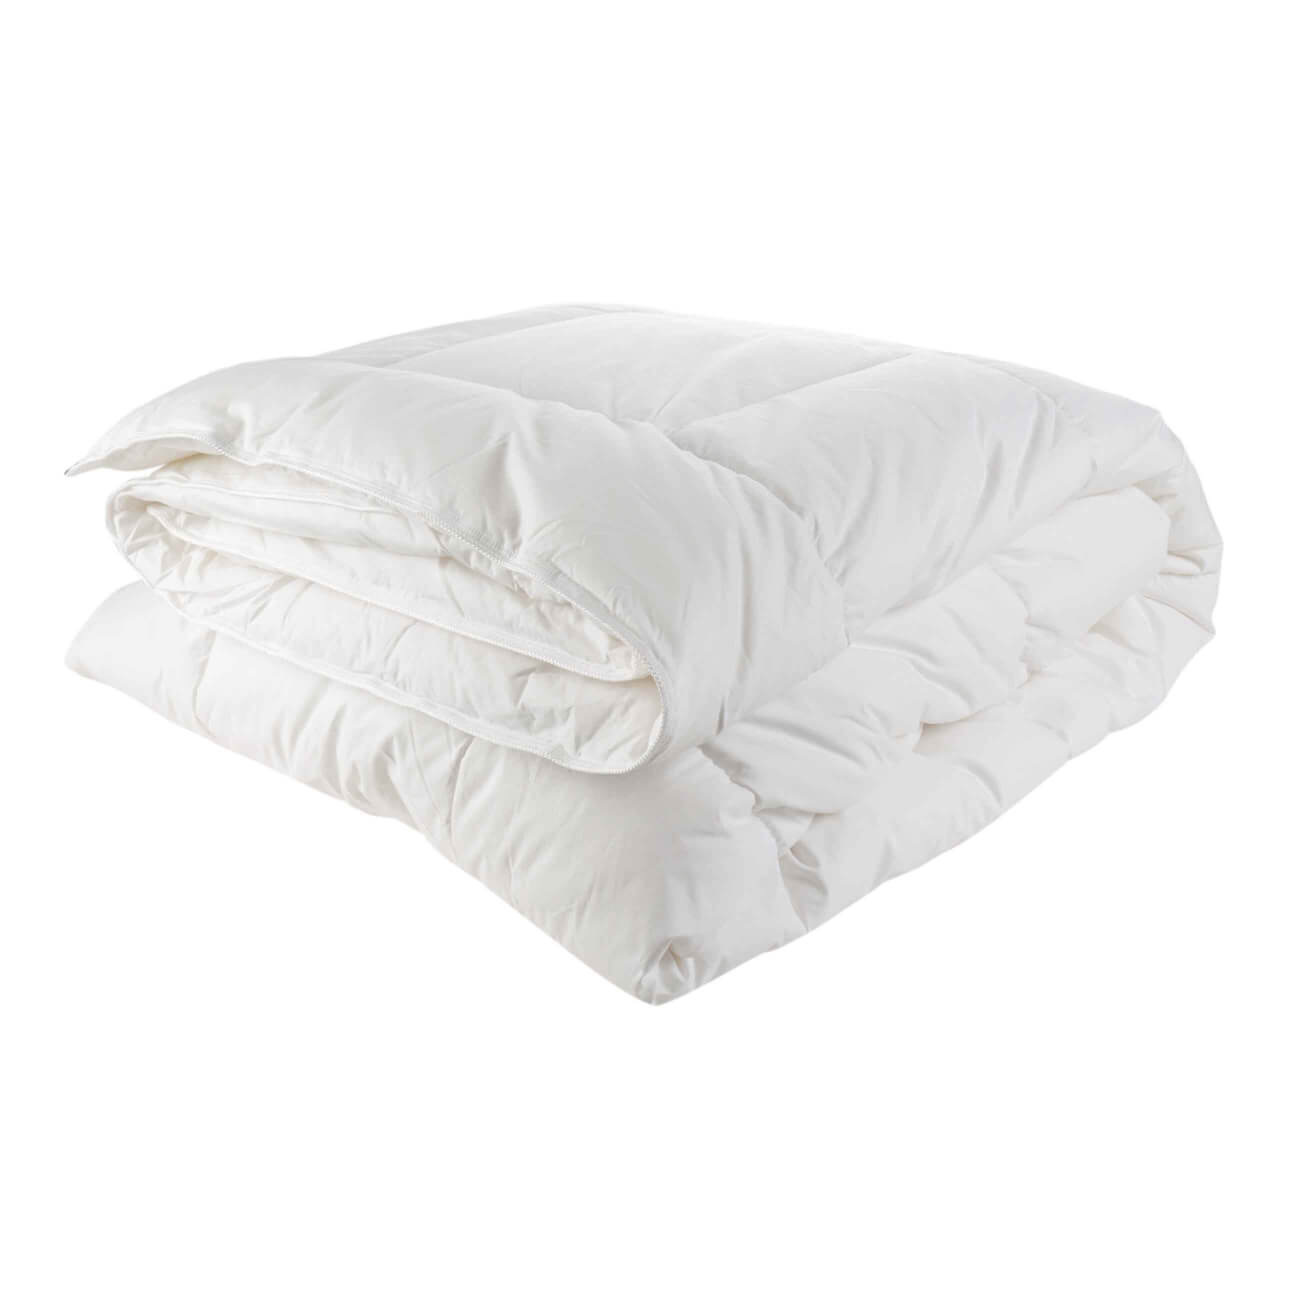 Одеяло, 140х200 см, хлопок/микрофибра, Soft cotton изображение № 1